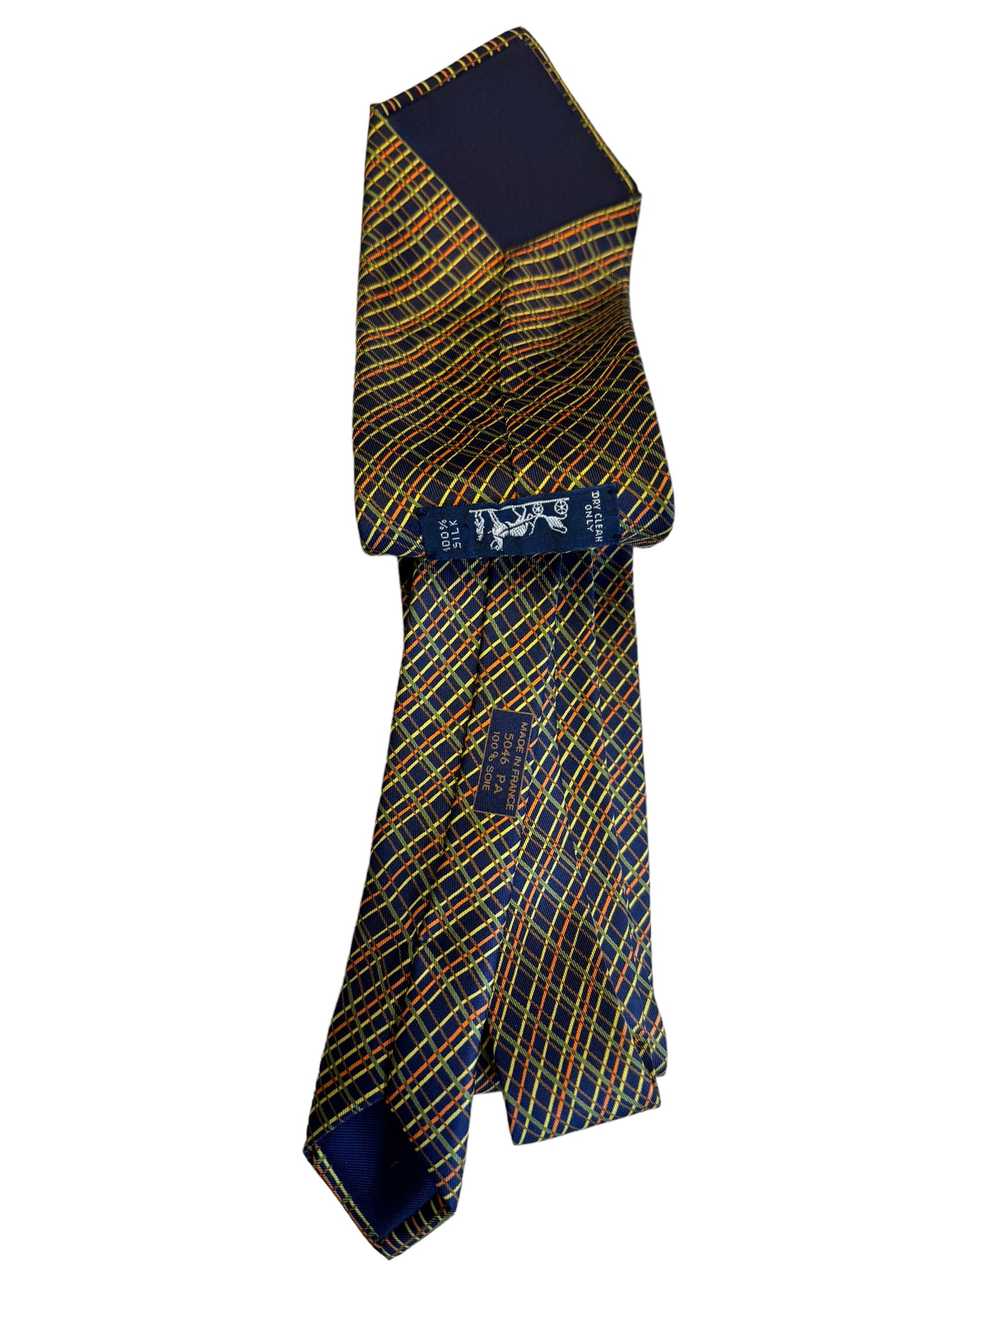 Vintage Hermes 100% Silk Graphic Tie - image 4